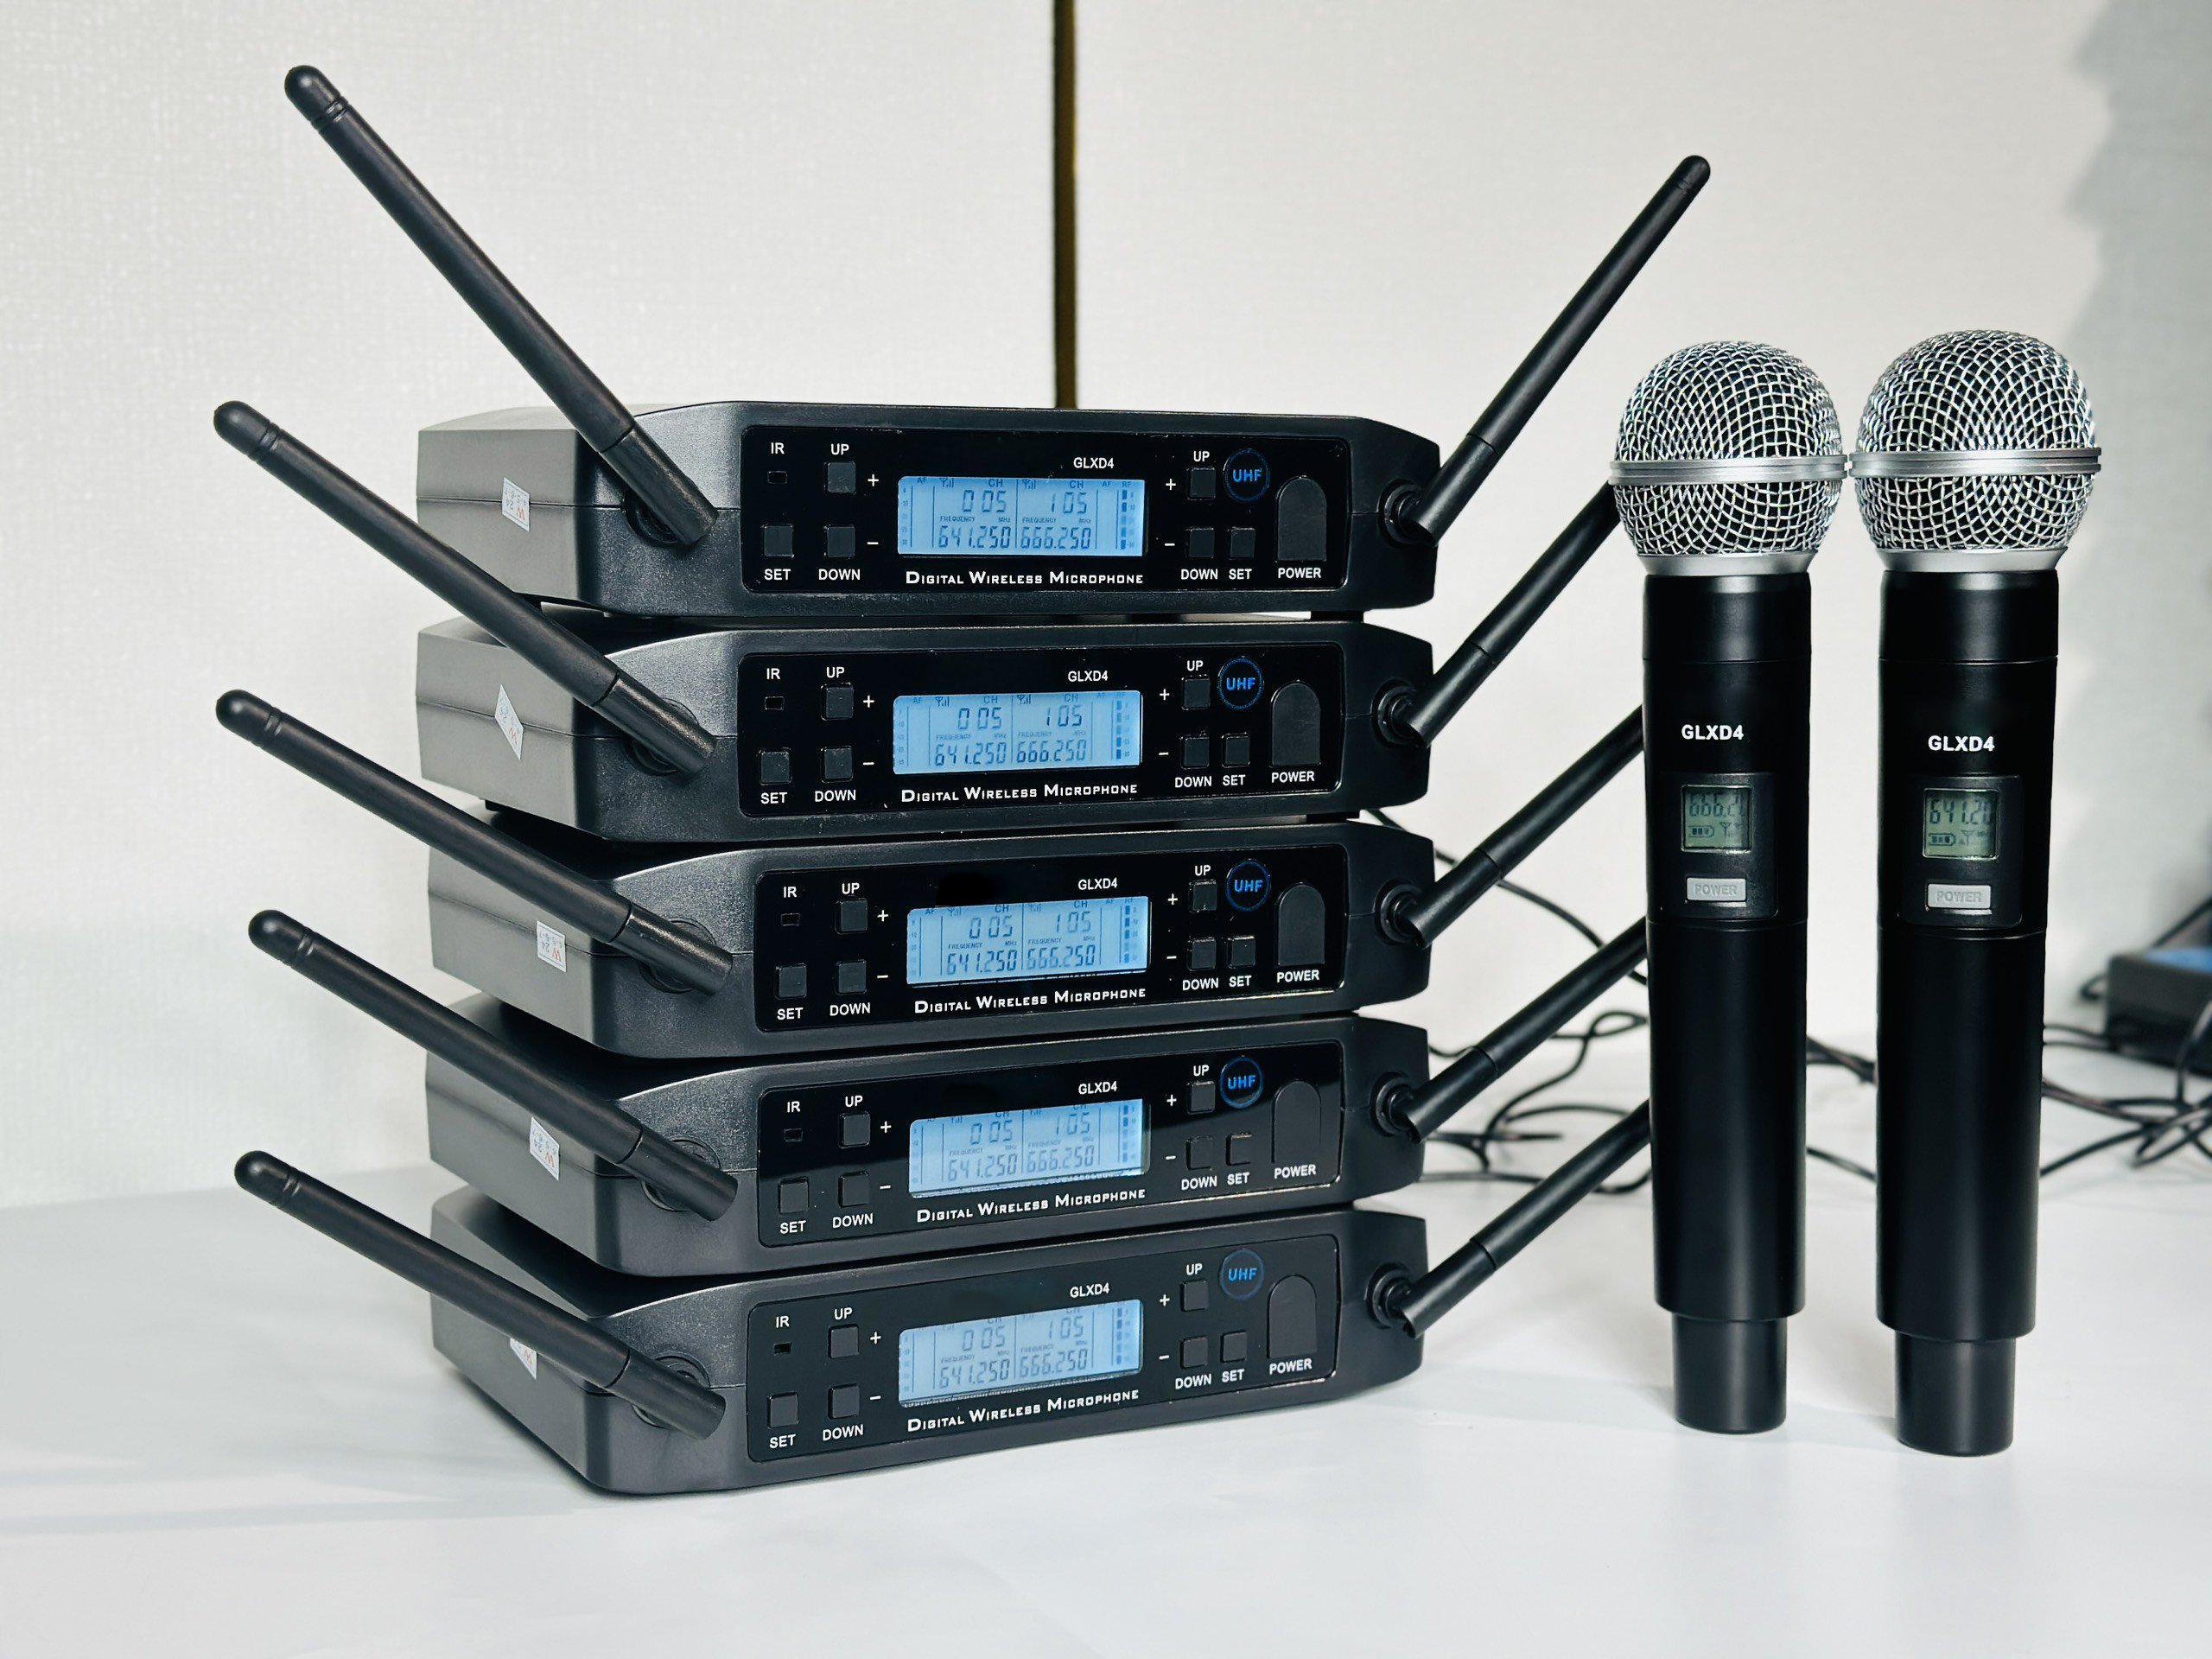 Micro Đầu Thu Lớn GLXD4 - Micro Karaoke Cao Cấp, Hút Âm Tốt, Bắt Sóng Xa Ổn Định, Chống Hú Tuyệt Đối, Điều Chỉnh Riêng Biệt Hàng Chính Hãng